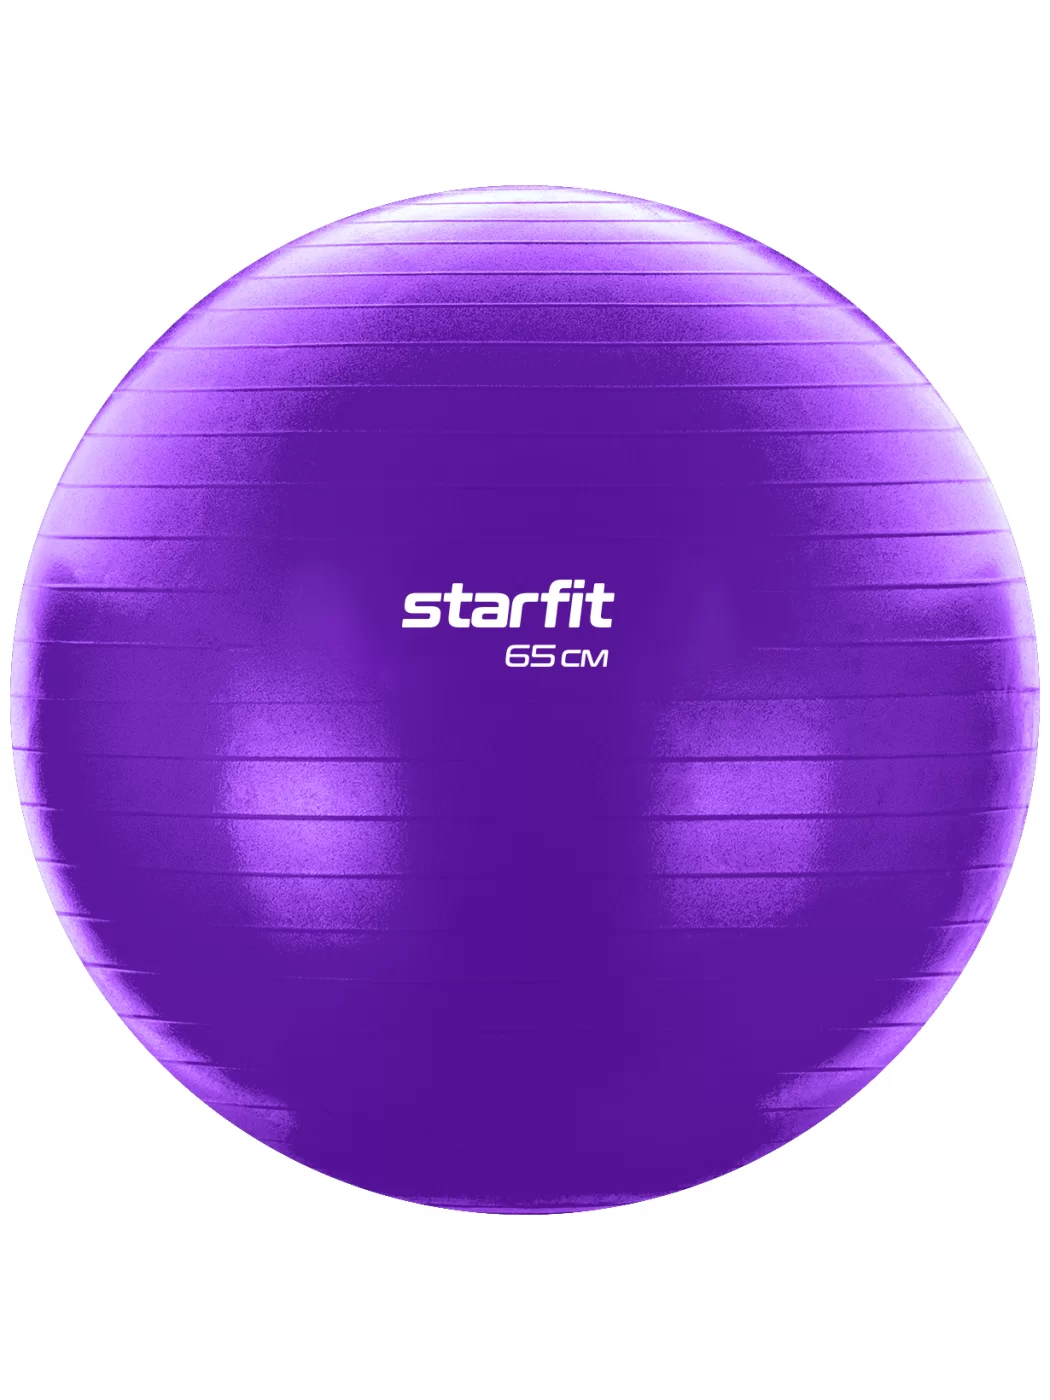 Реальное фото Фитбол 65 см StarFit GB-108 антивзрыв фиолетовый УТ-00020575 от магазина СпортСЕ